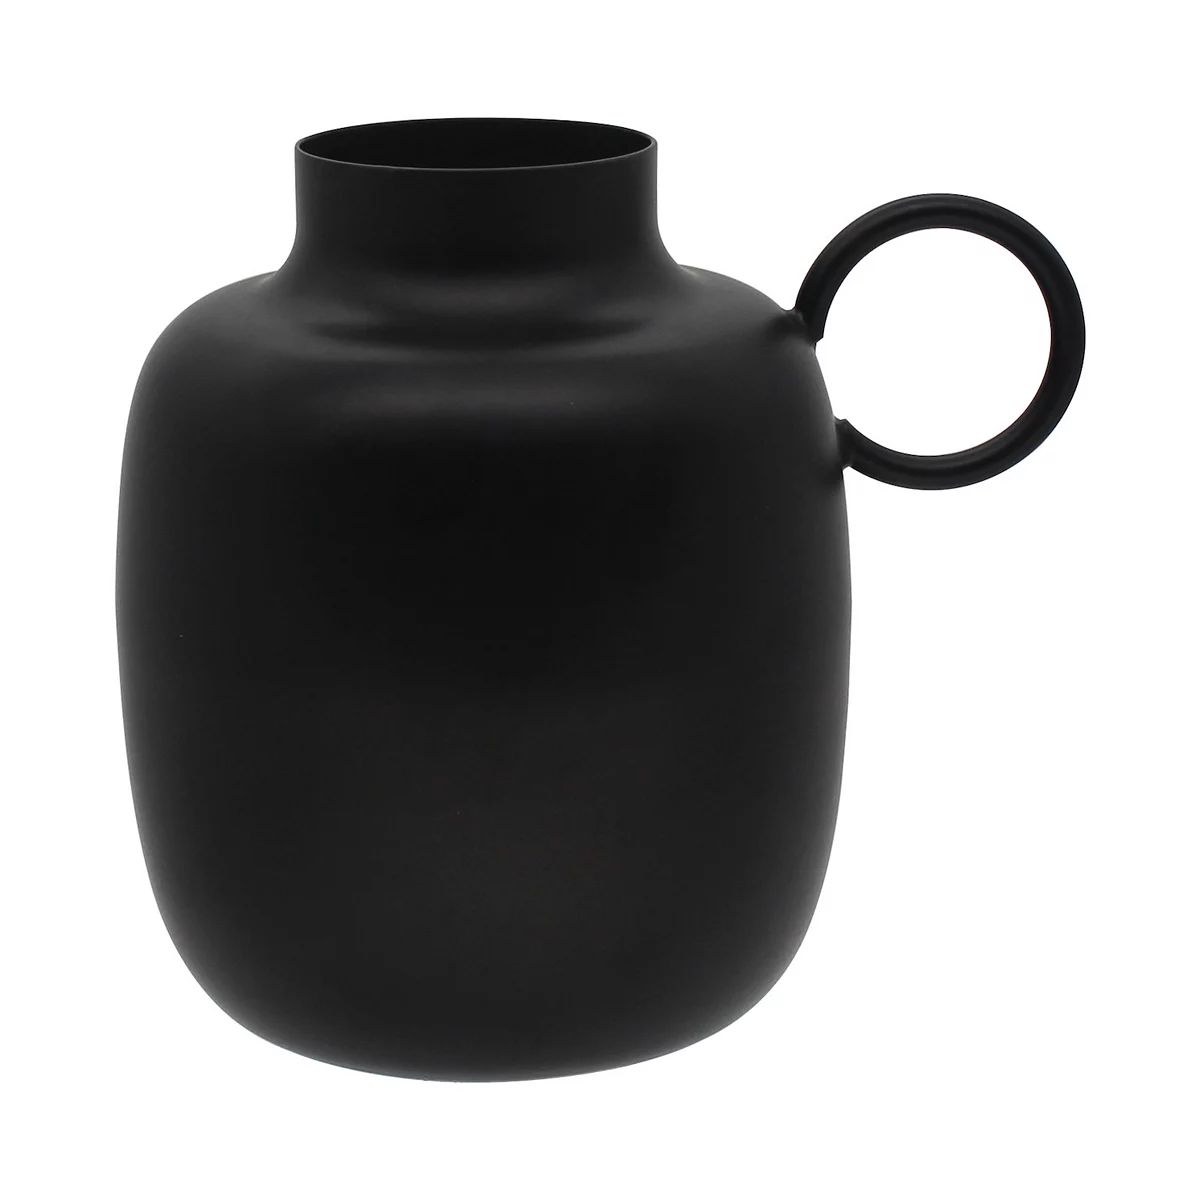 Painted Black Metal Vase with Circular Handle | Kohl's